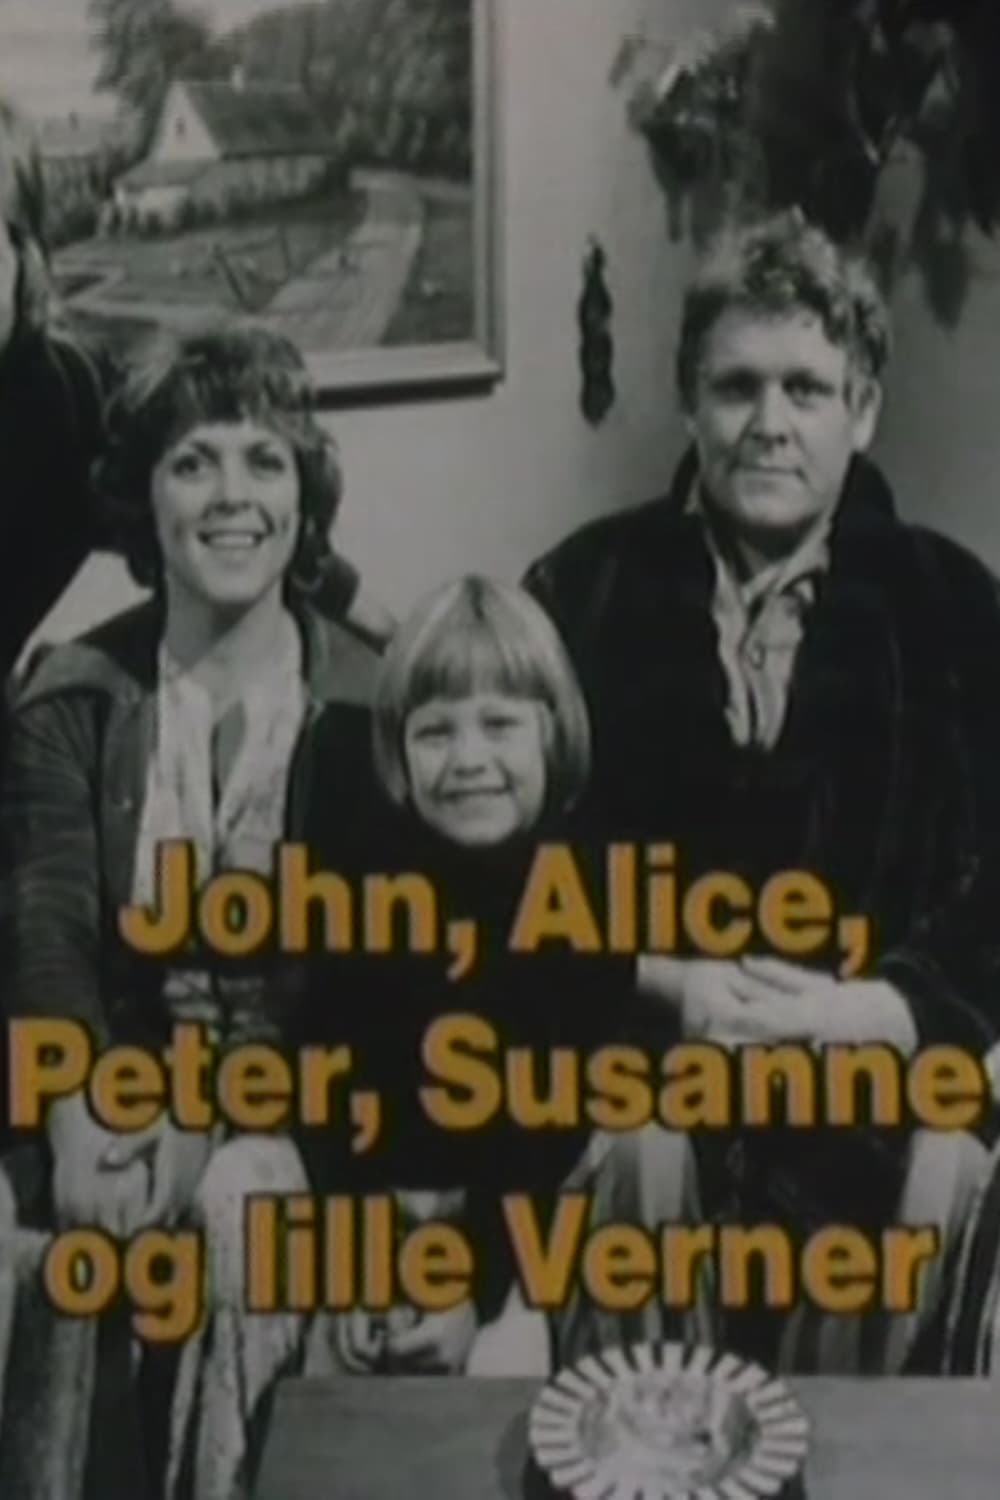 John, Alice, Peter, Susanne og lille Verner